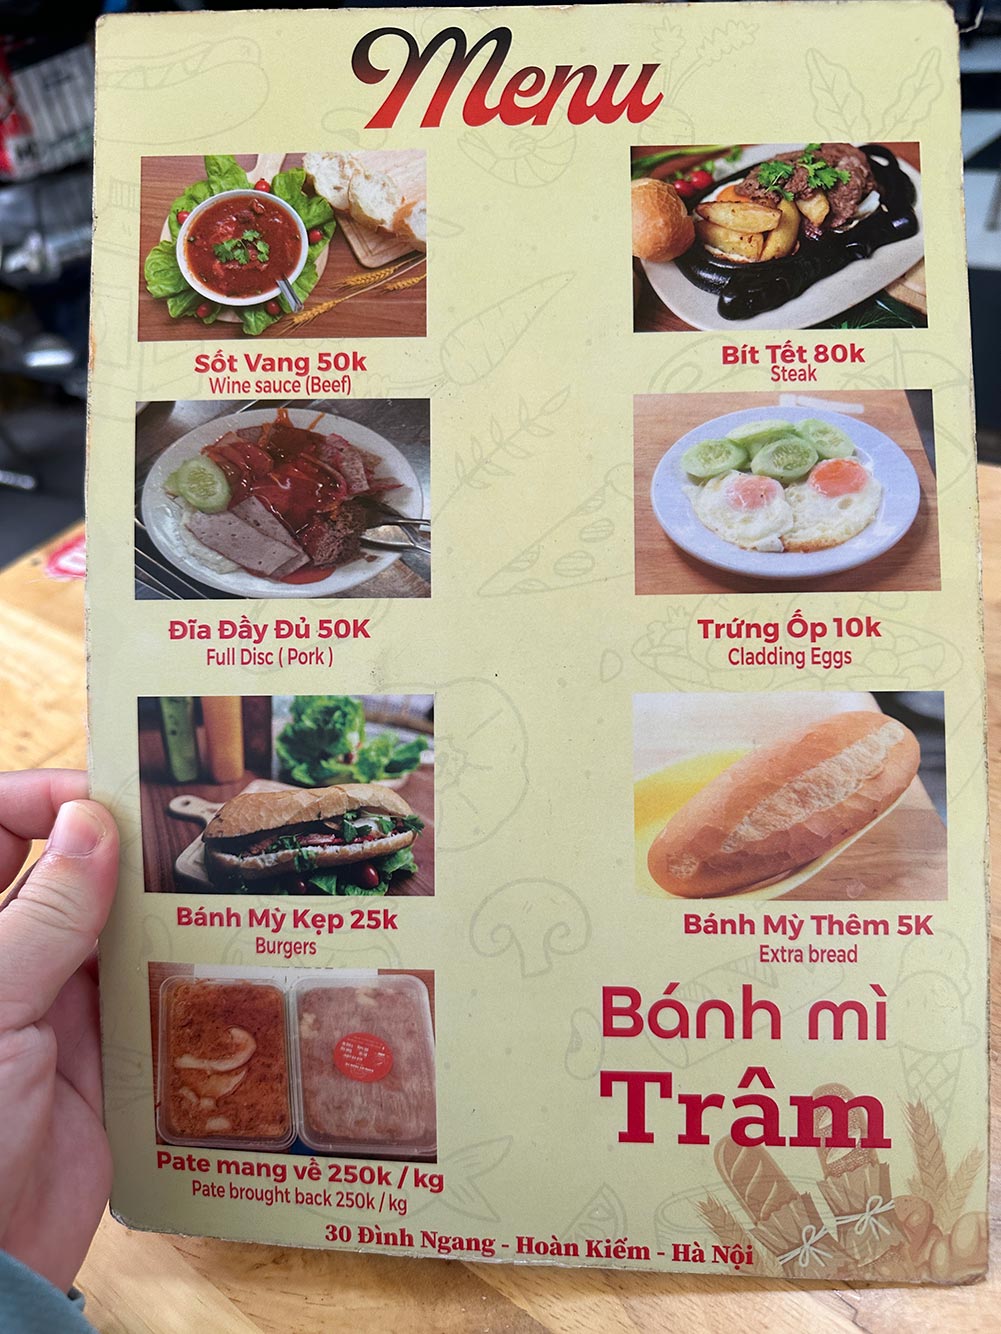 Hanoi Banh Mi Tram Menu